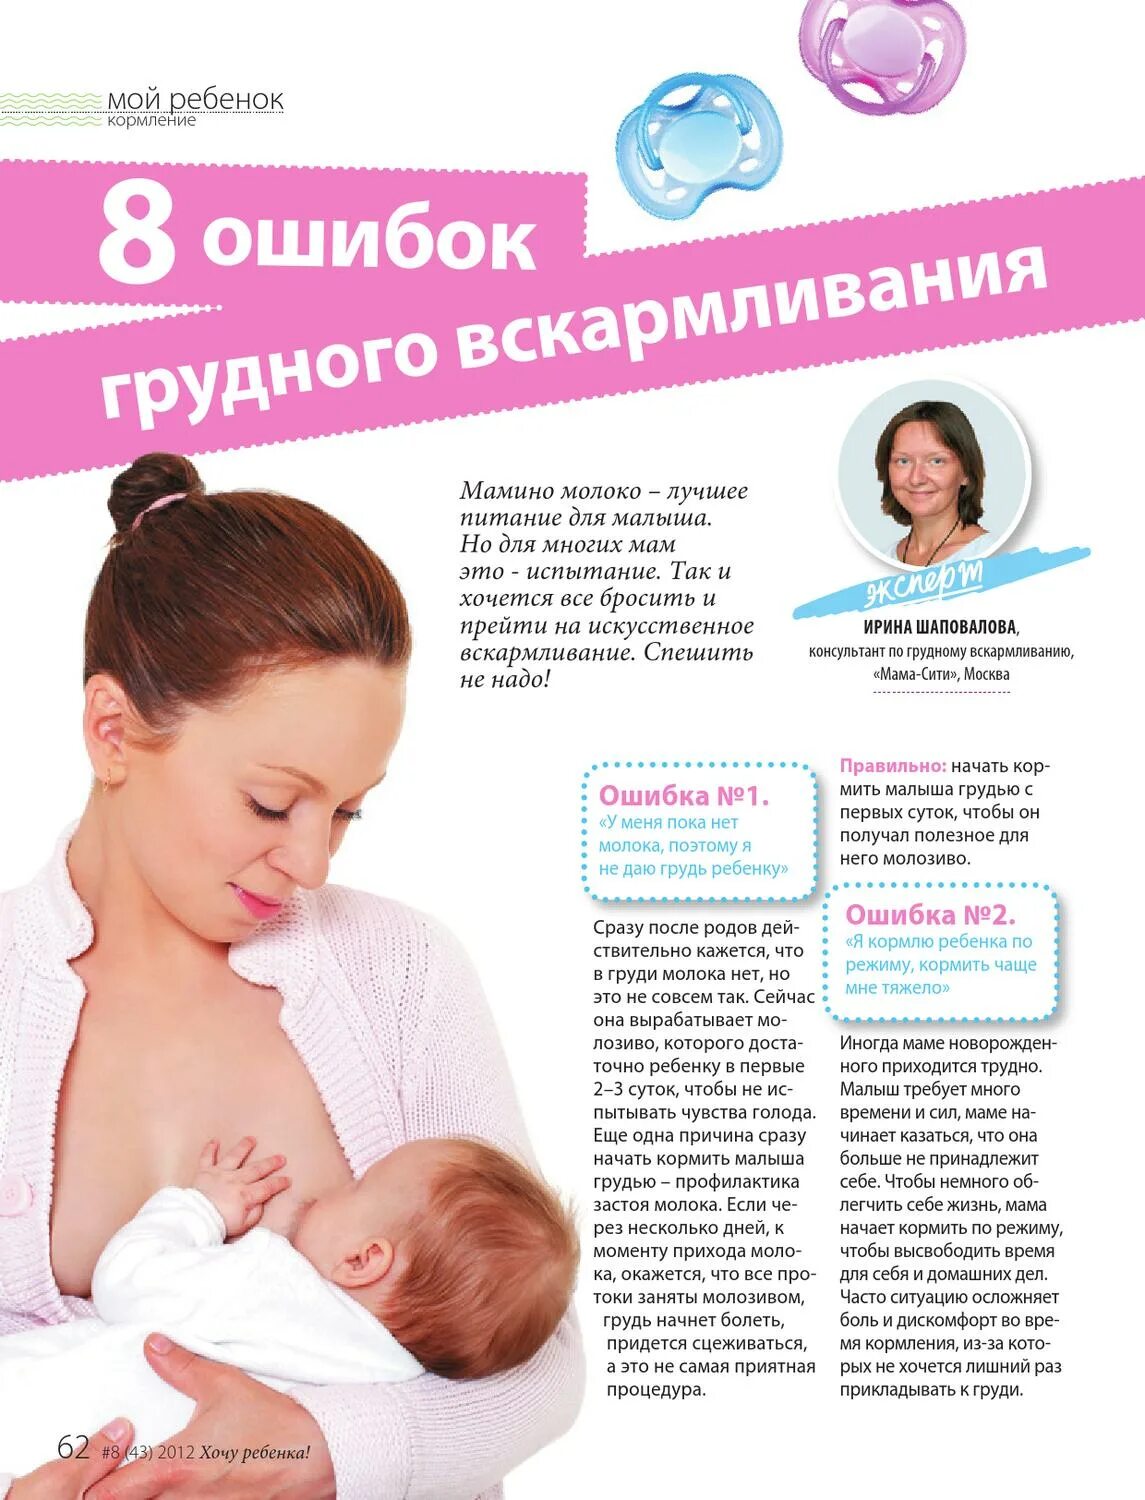 При грудном возможно ли забеременеть вскармливании. Если кормишь ребенка грудью можно забеременеть. Можно ли забеременеть если кормишь ребенка грудным молоком. Можно ли забеременеть во время гв.